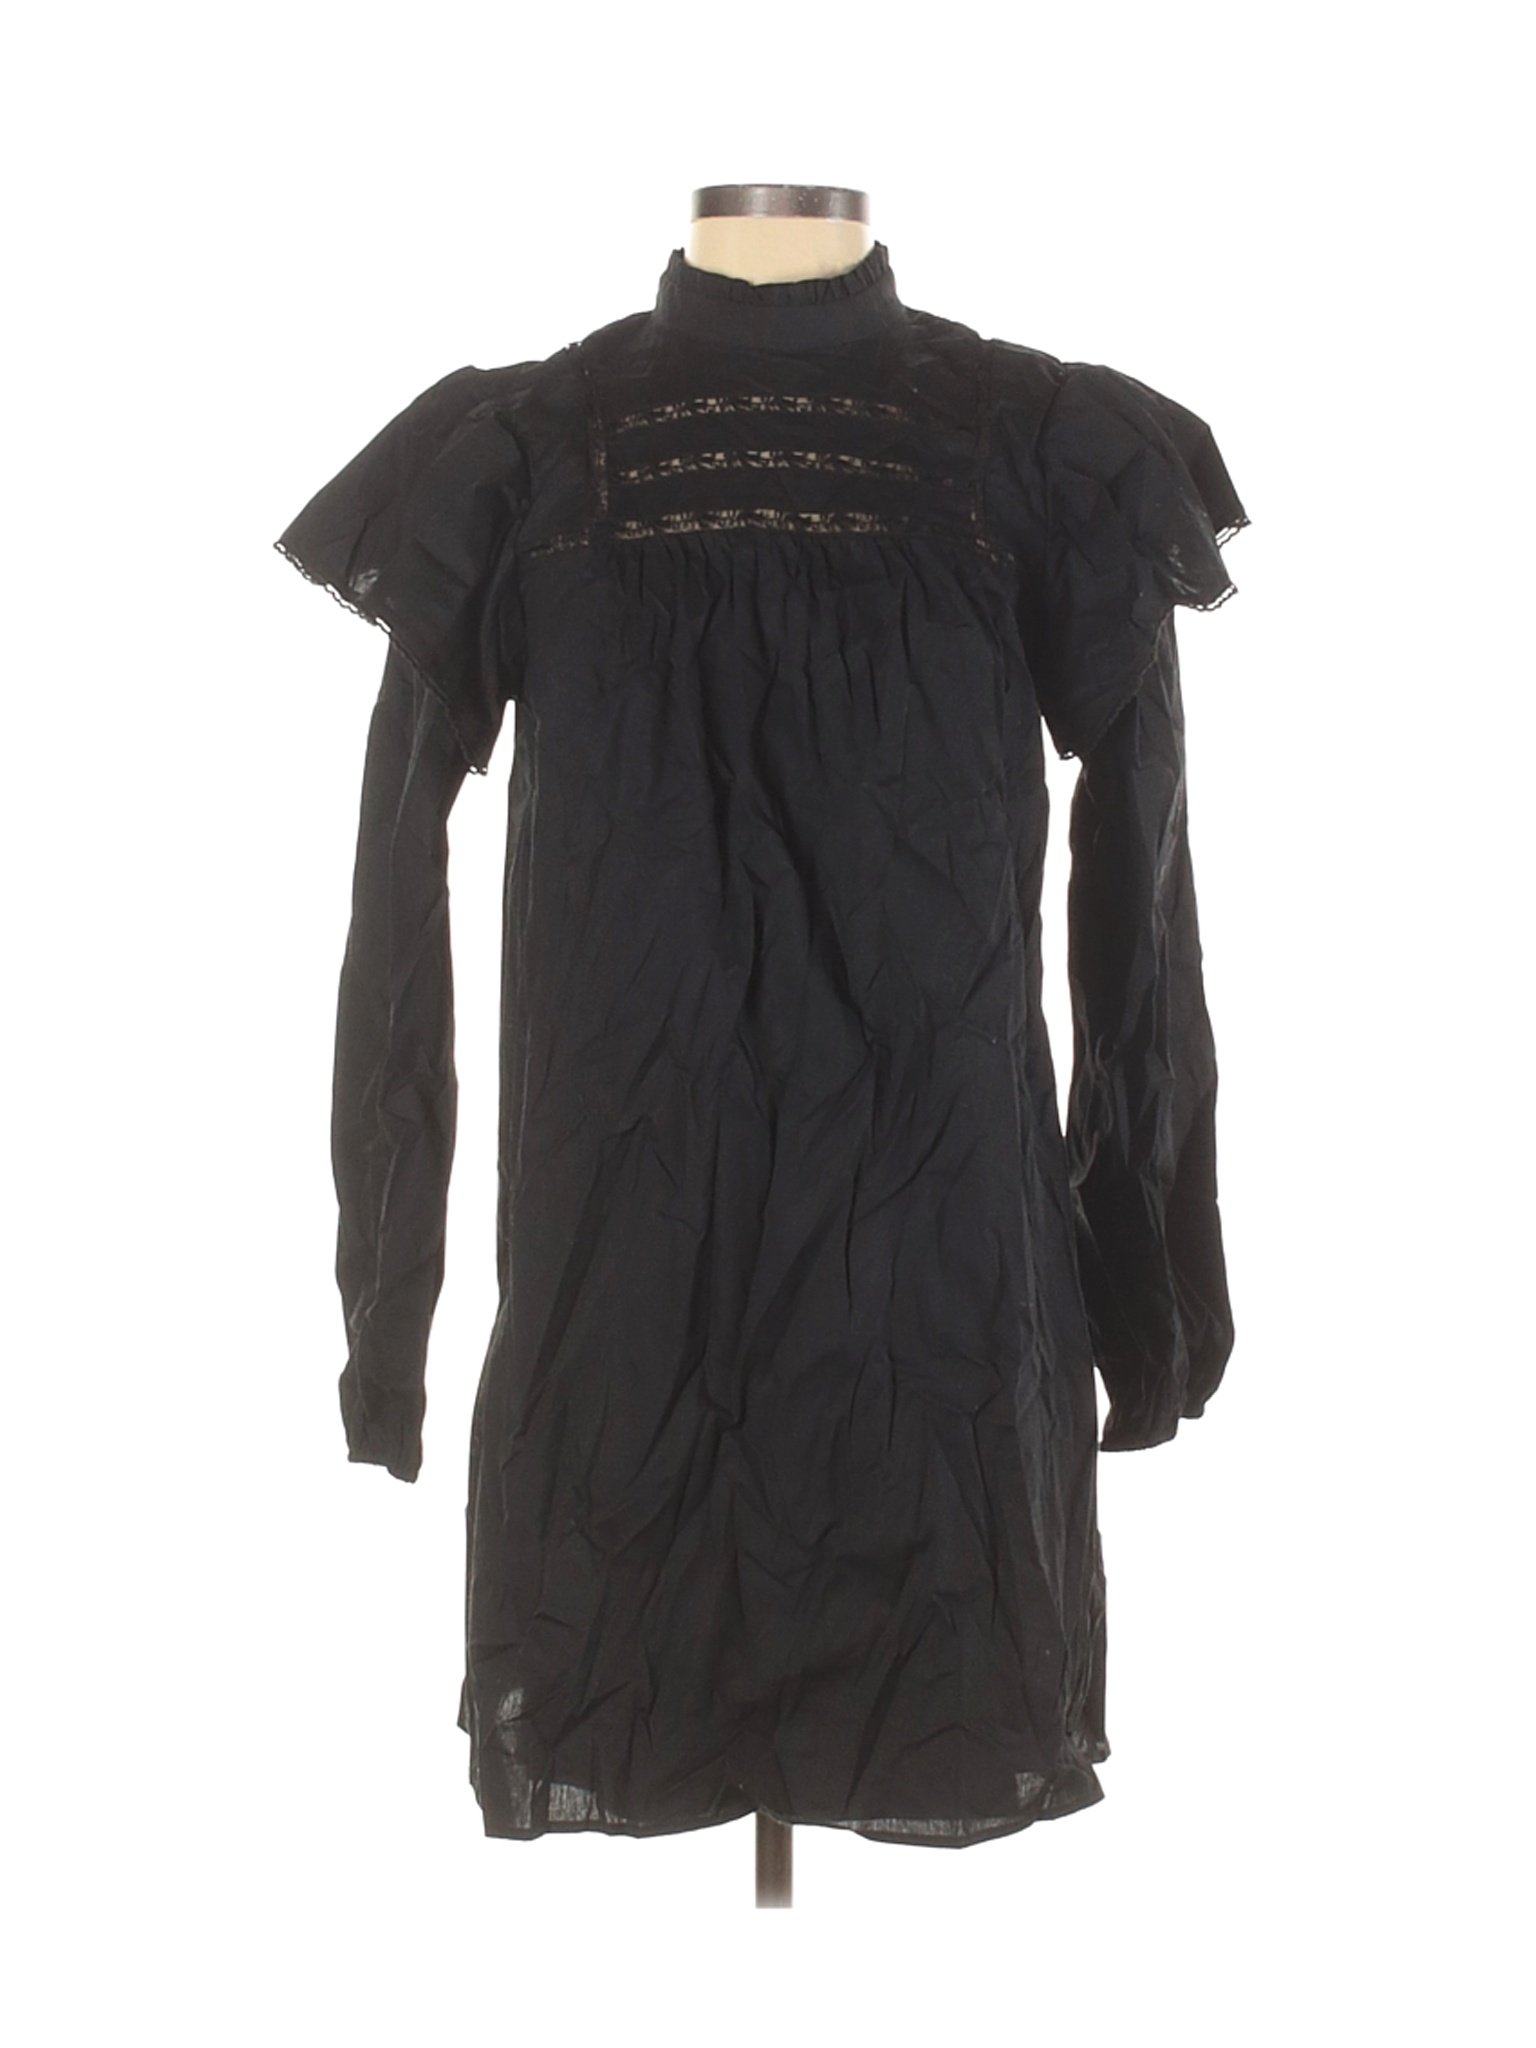 Wild Fable Women Black Casual Dress S | eBay